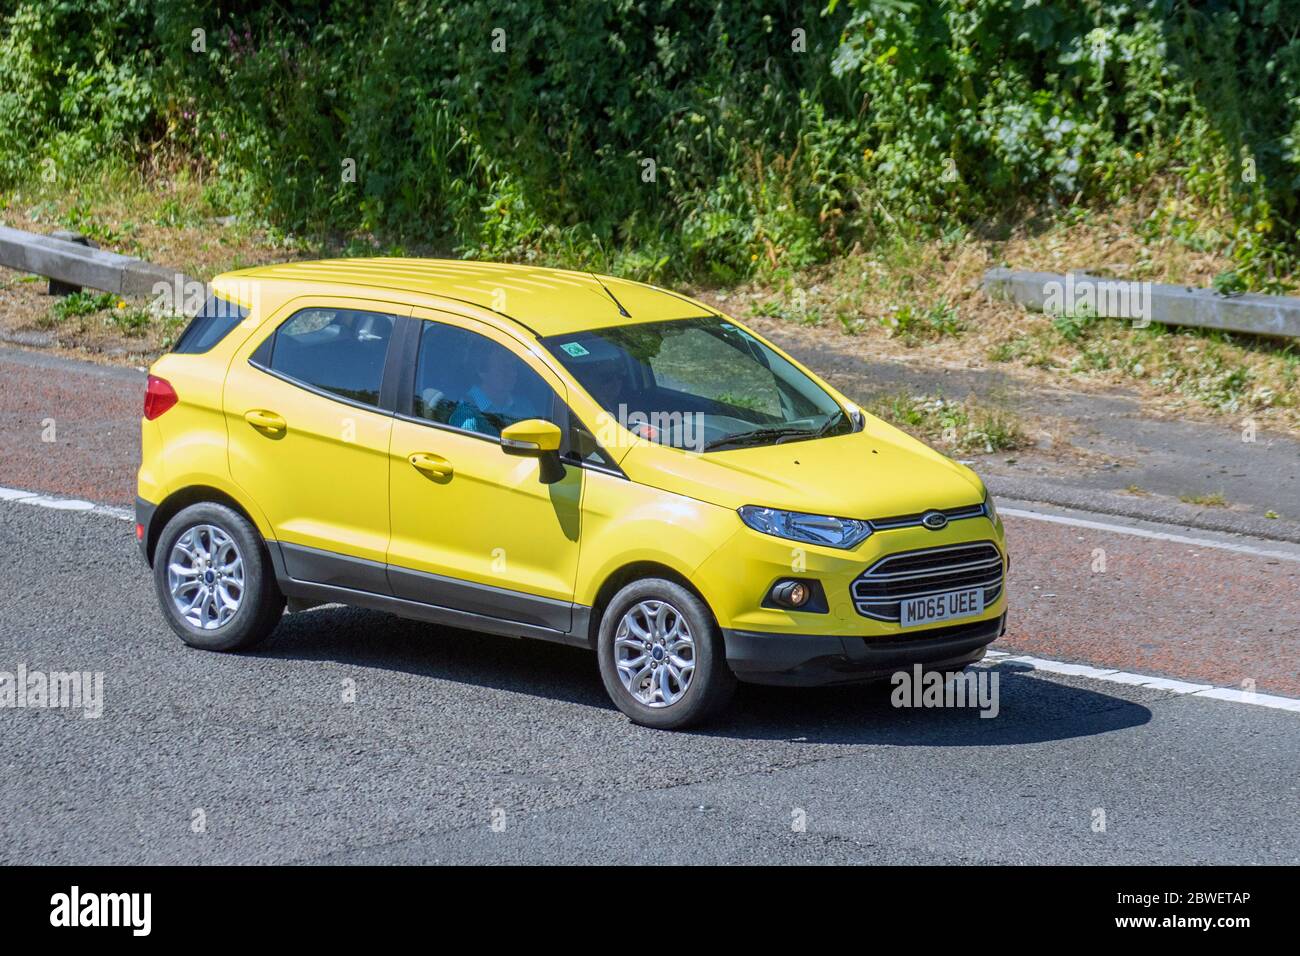 2015 jaune Ford Ecosport Zetec Turbo; véhicules en mouvement de la circulation automobile, voitures conduisant des véhicules sur les routes britanniques, moteurs, conduite sur l'autoroute M6 Banque D'Images